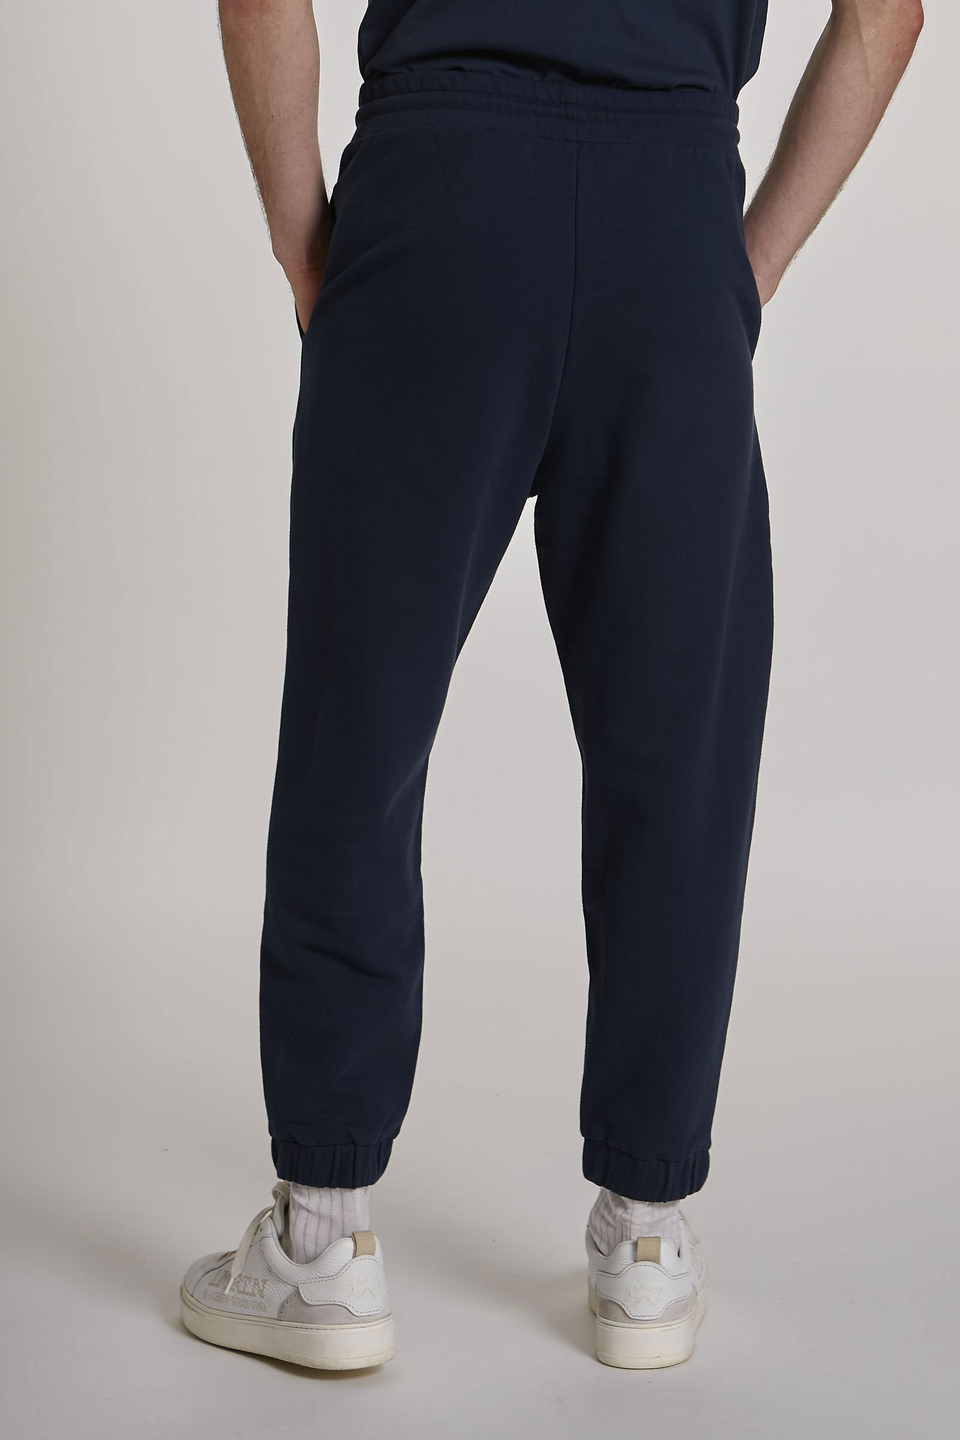 Pantalon jogger homme en coton stretch coupe oversize | La Martina - Official Online Shop